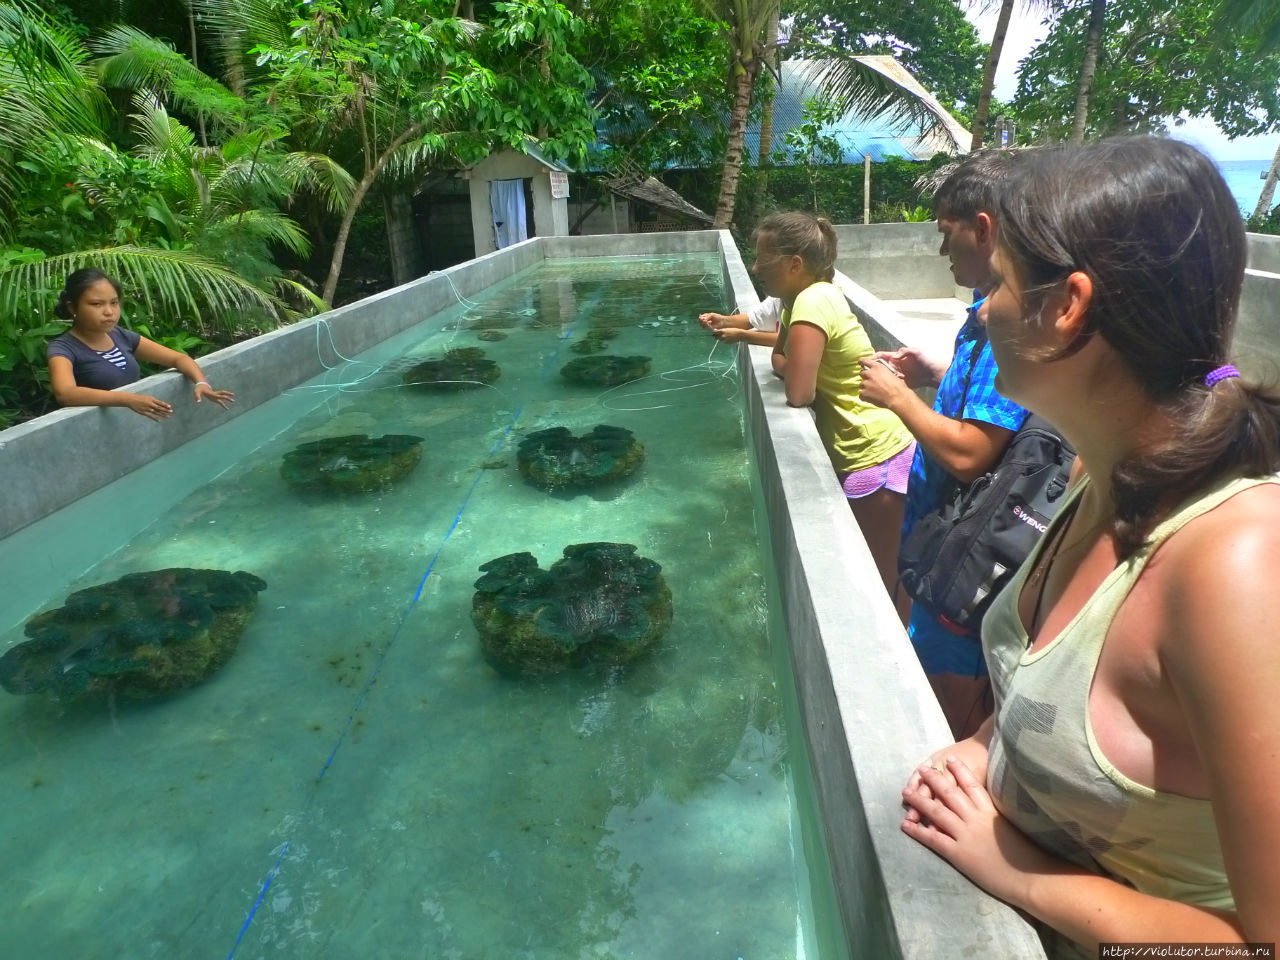 Камигин. Ферма гигантских моллюсков Остров Камигин, Филиппины